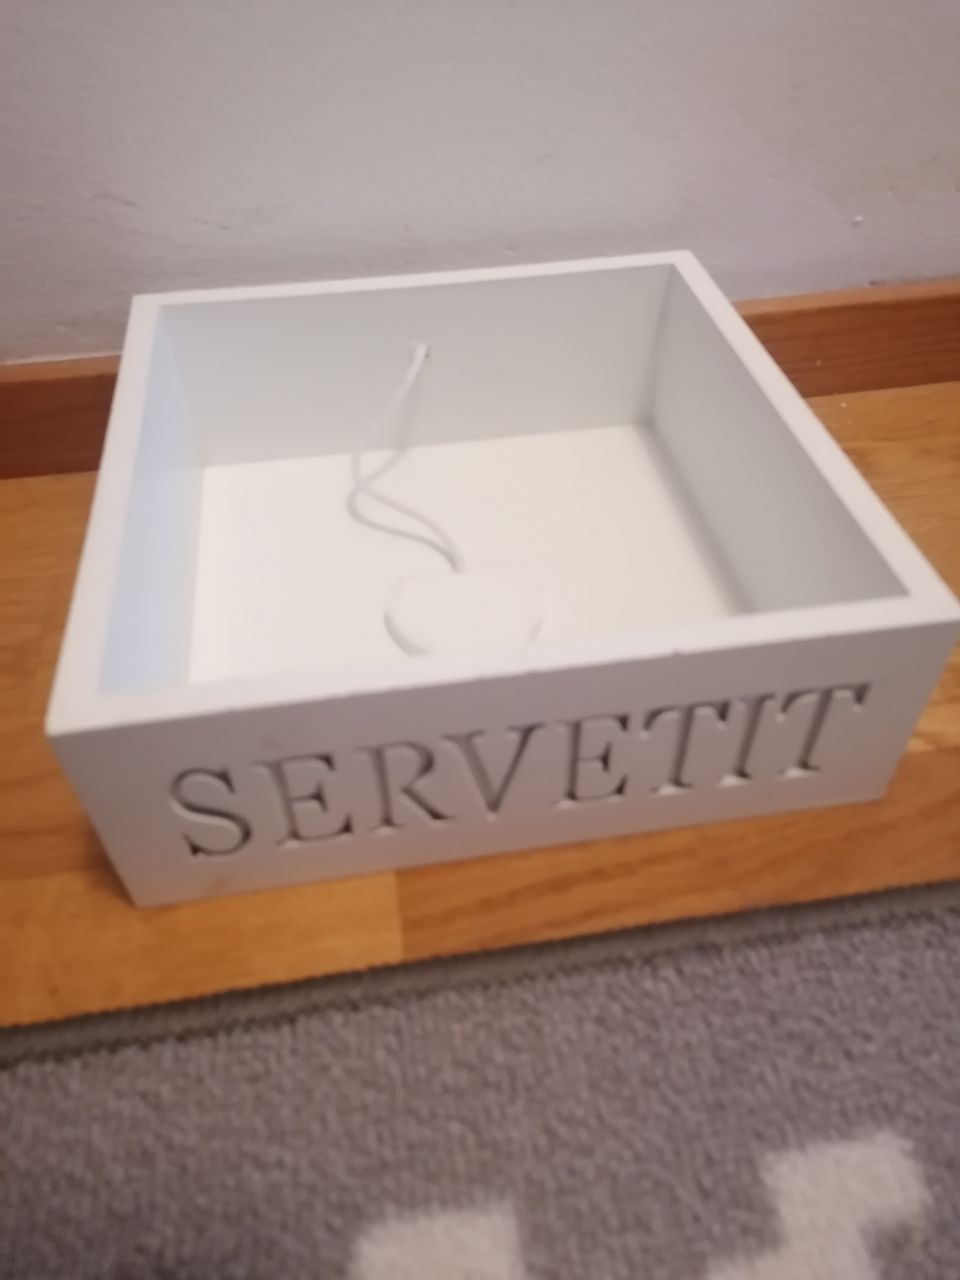 Servetit sisustuslaatikko